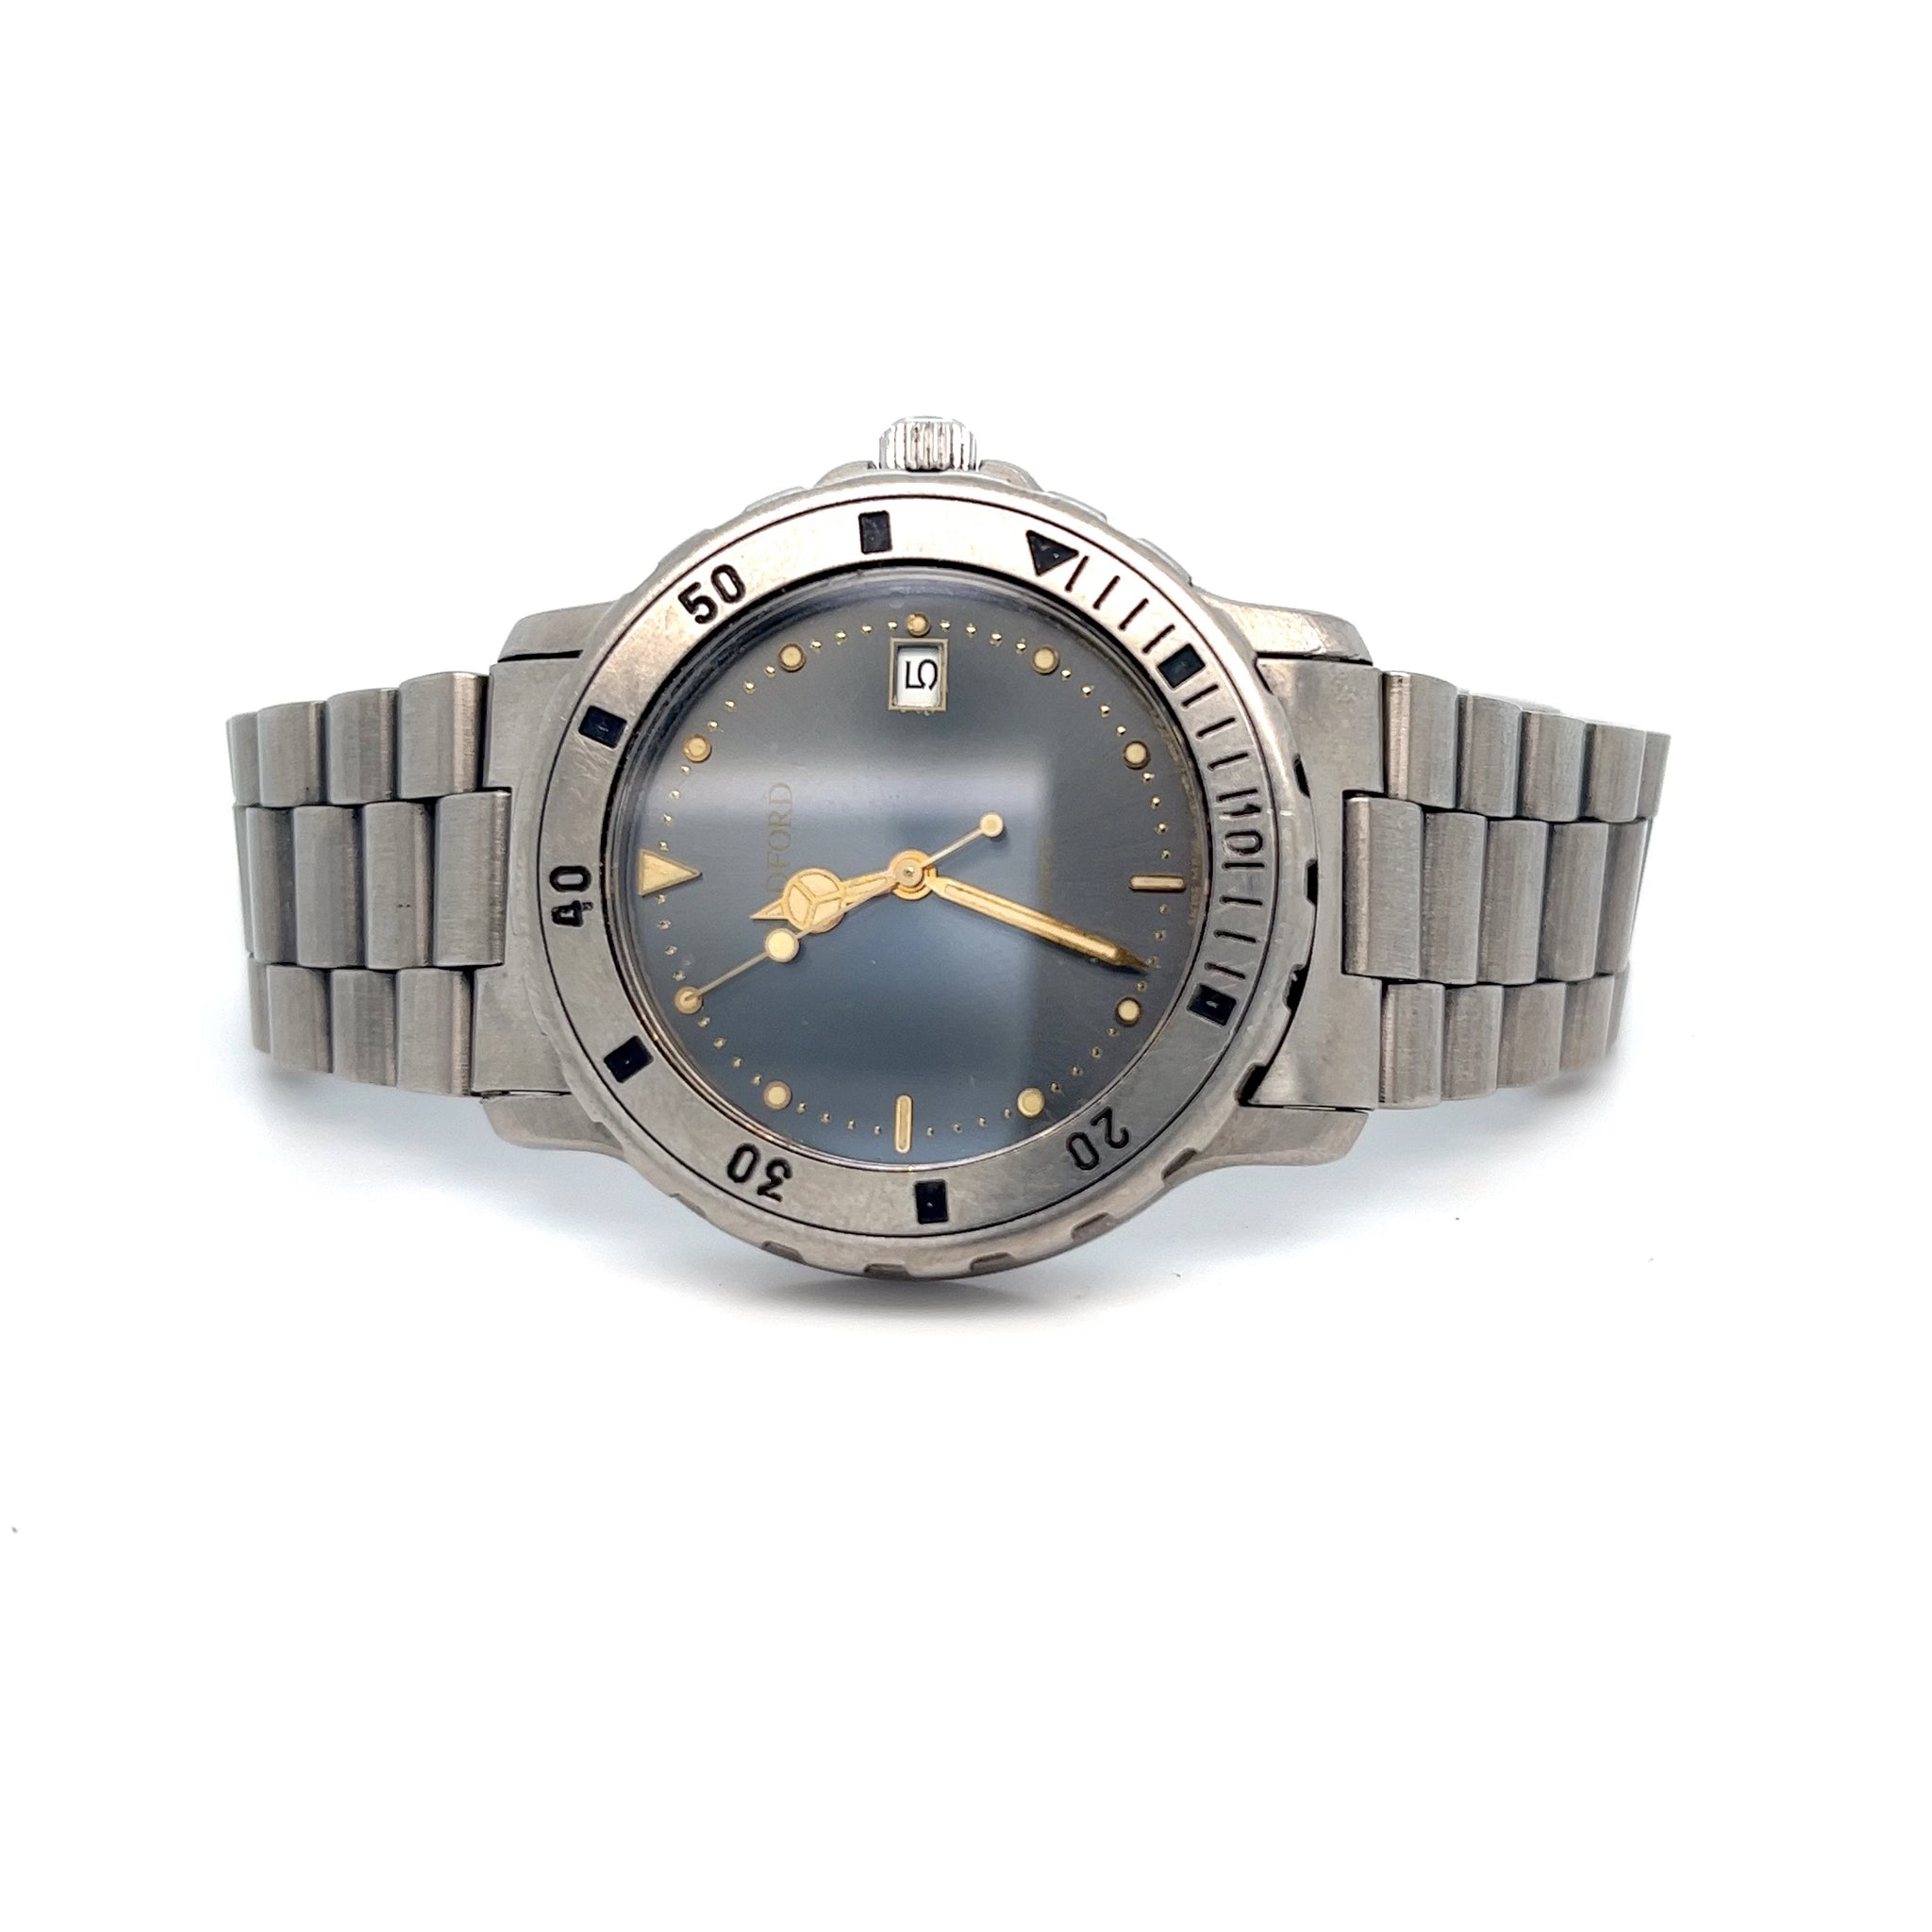 Bradford Titanium Diver's Watch